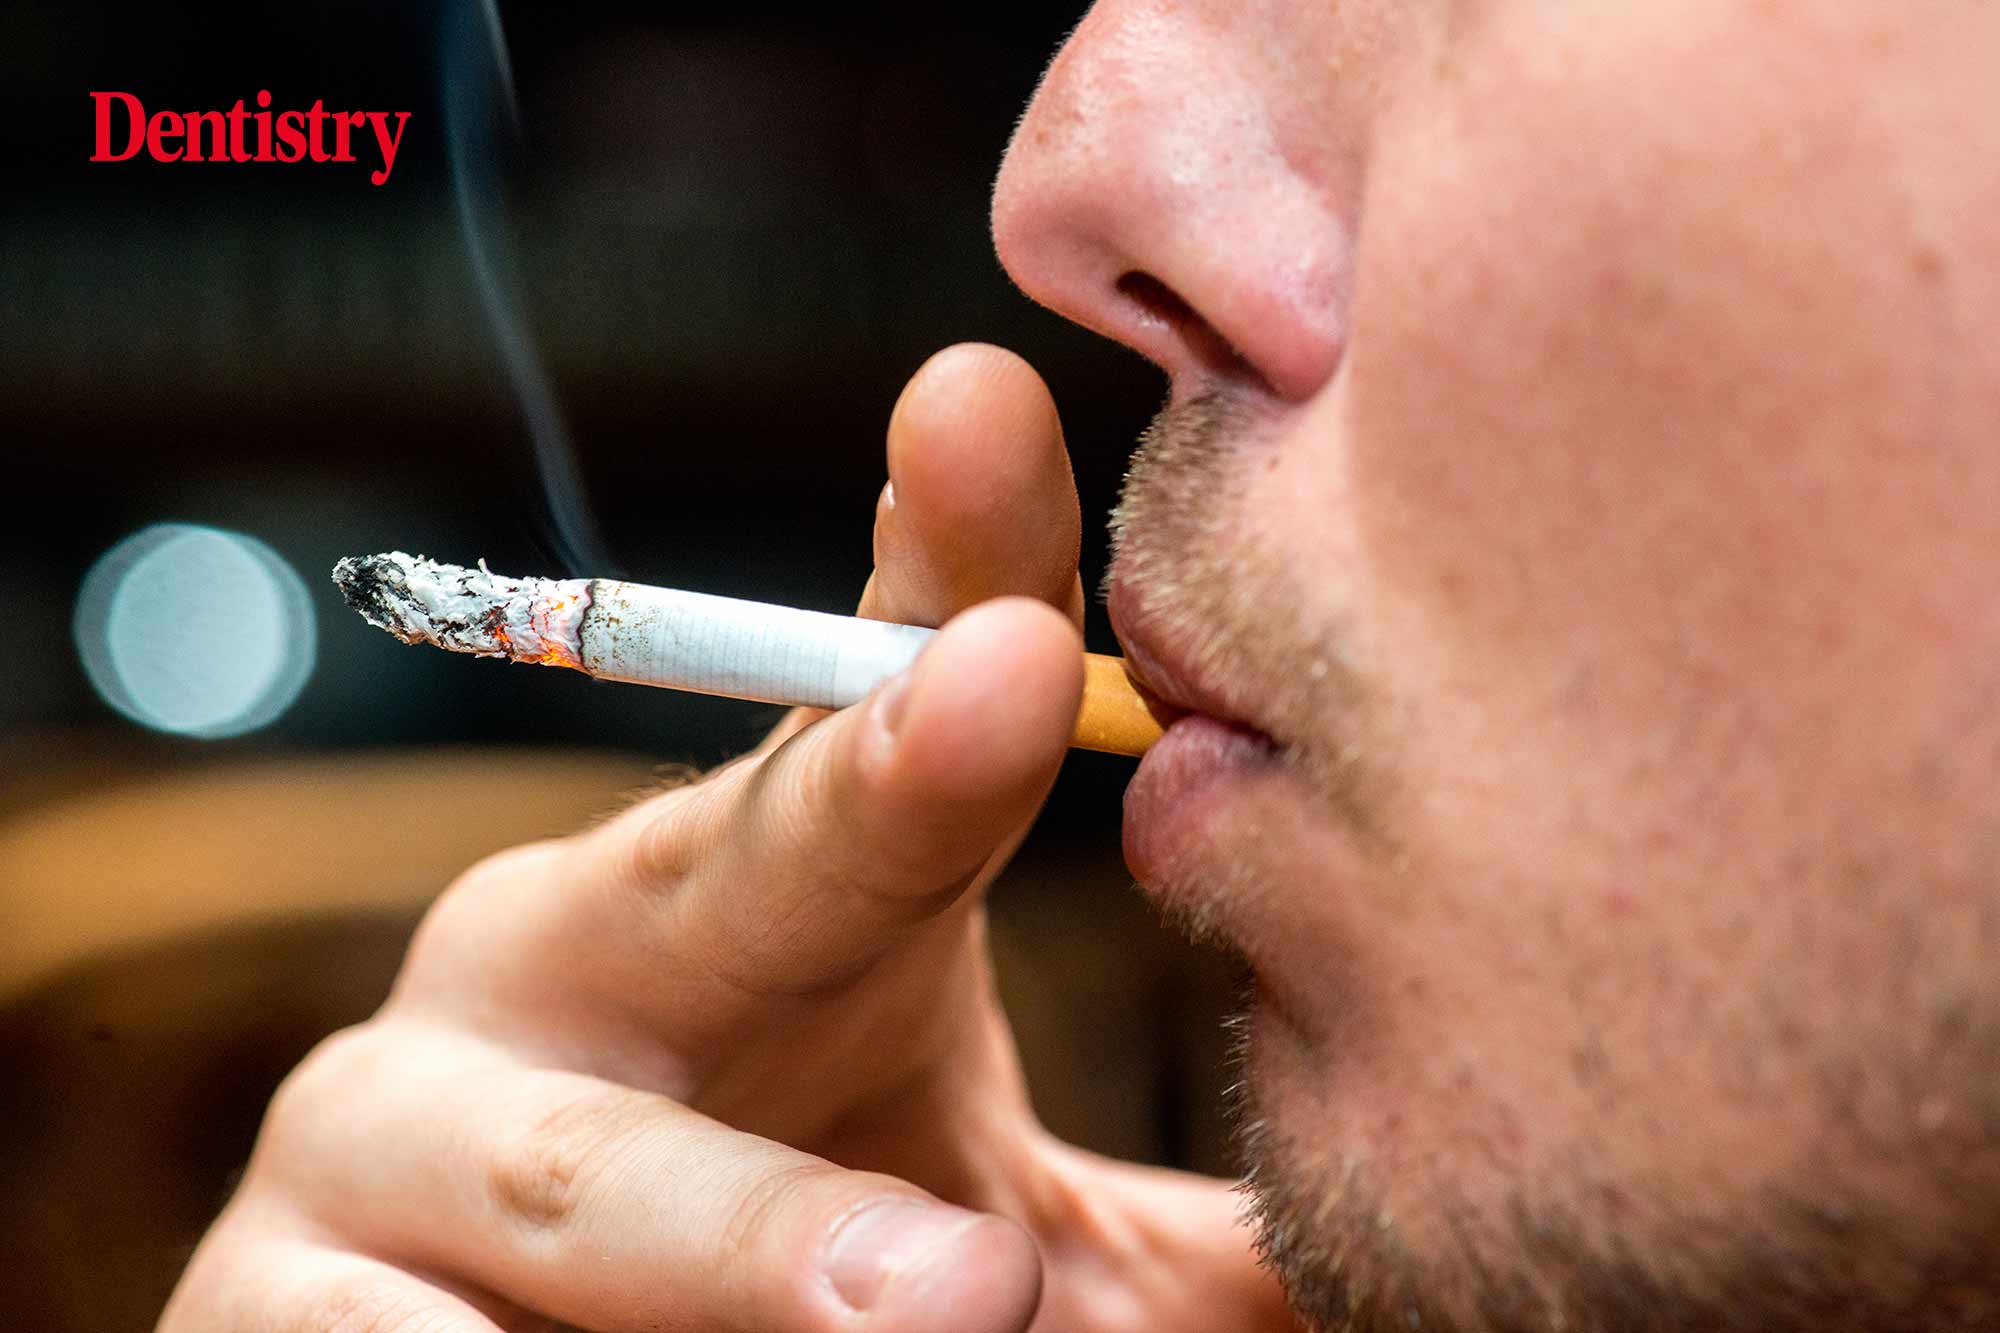 'Smoking kills' should be printed on individual cigarettes, say MPs